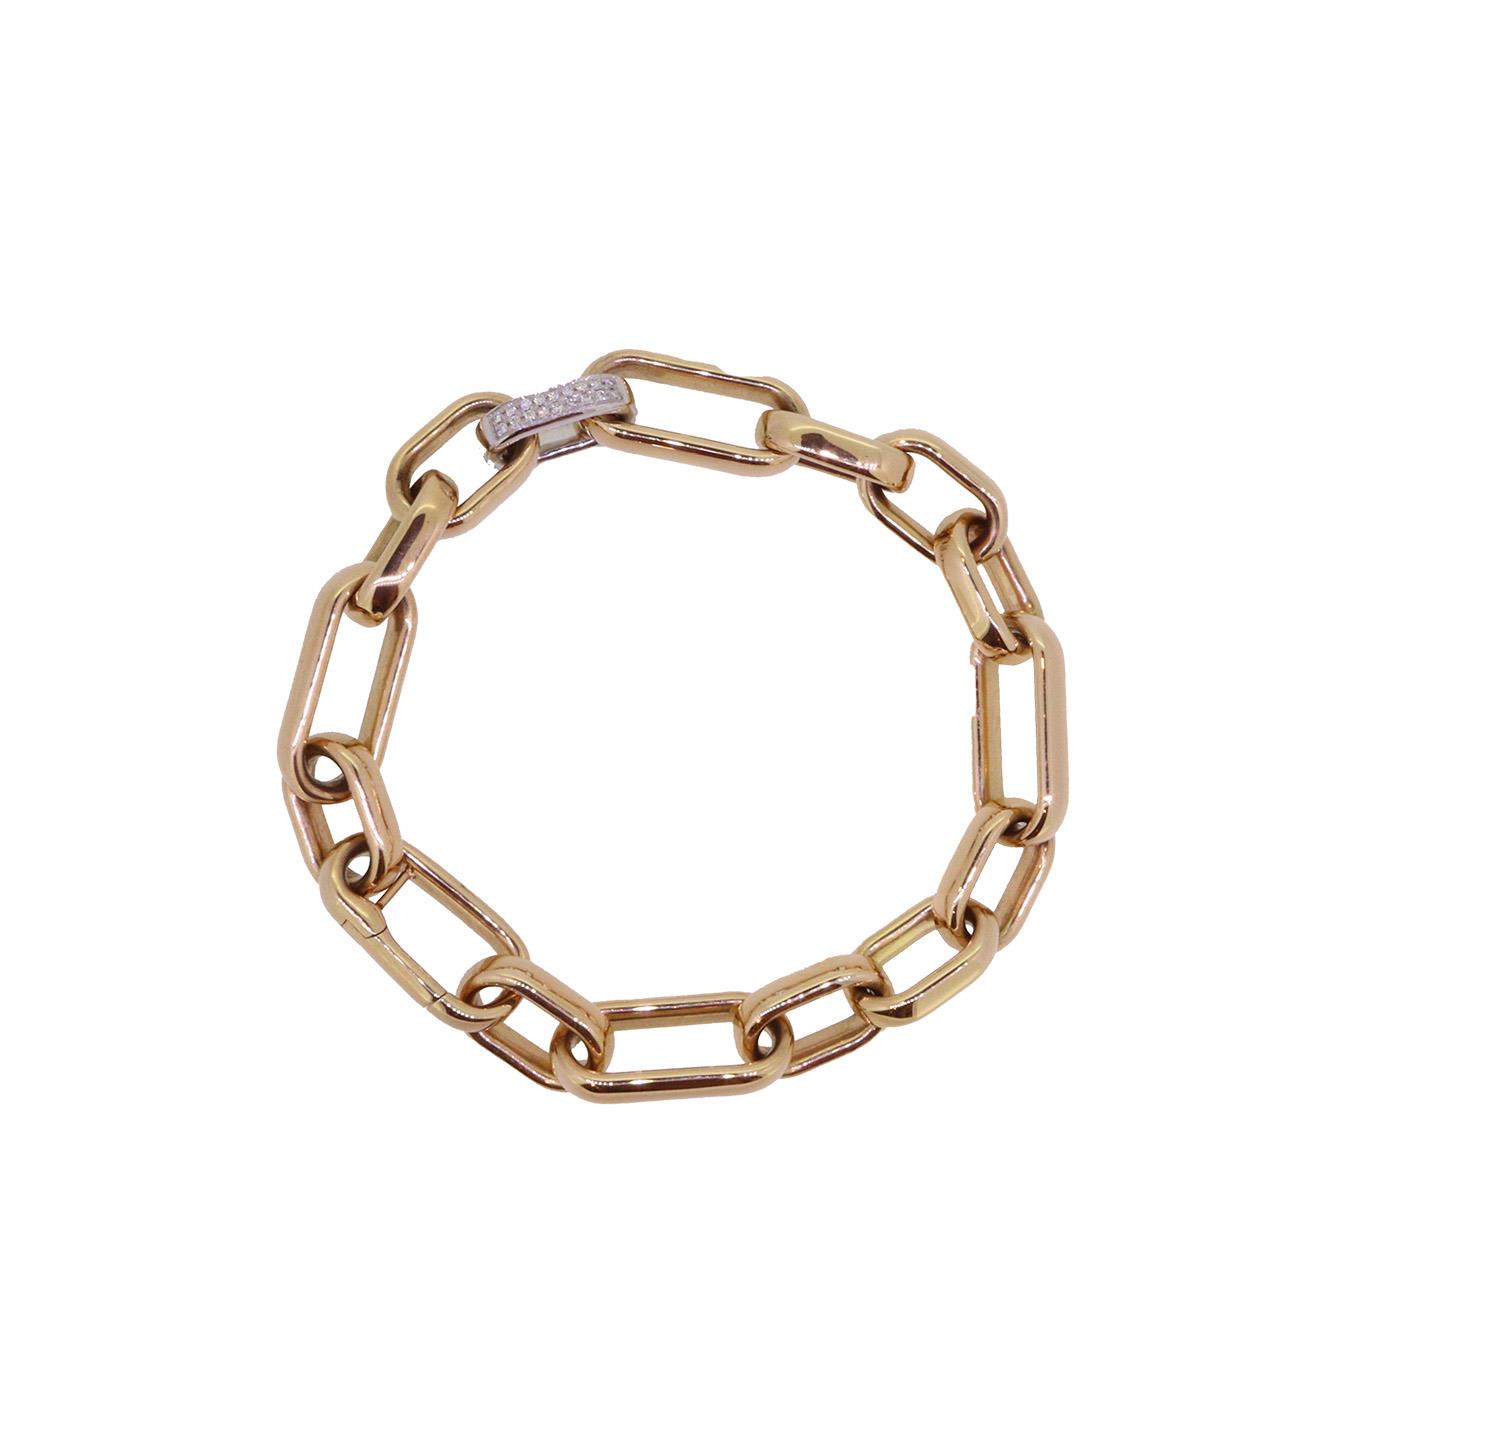 Armband Brillanten Pavé 18kt Rosé und Weißgold - Individuelle Marken - 835BX0538